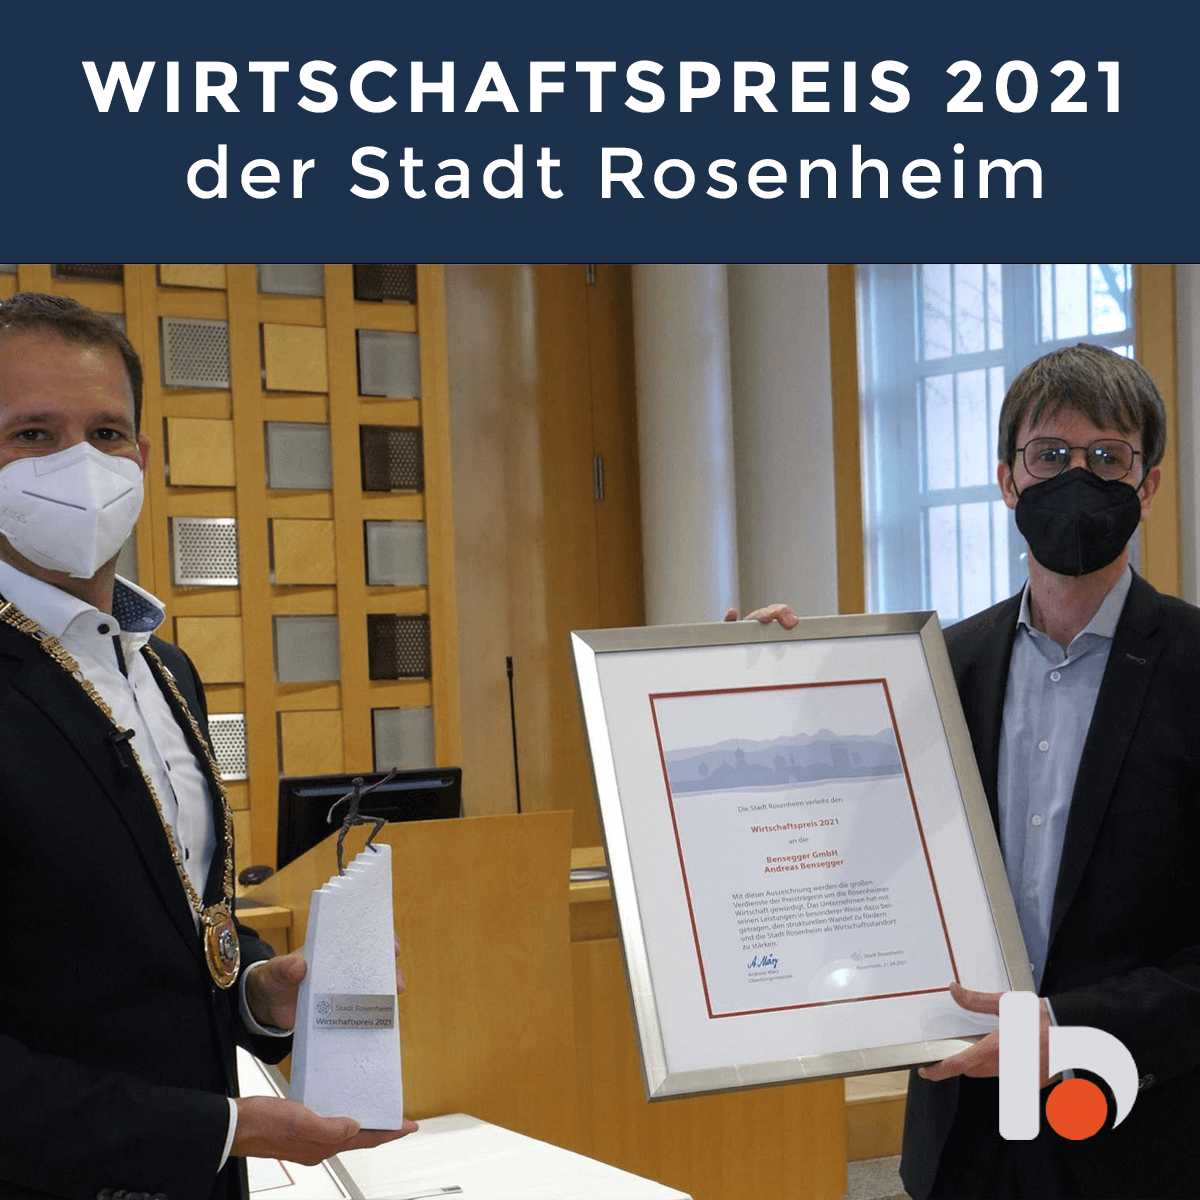 WIRTSCHAFTSPREIS 2021